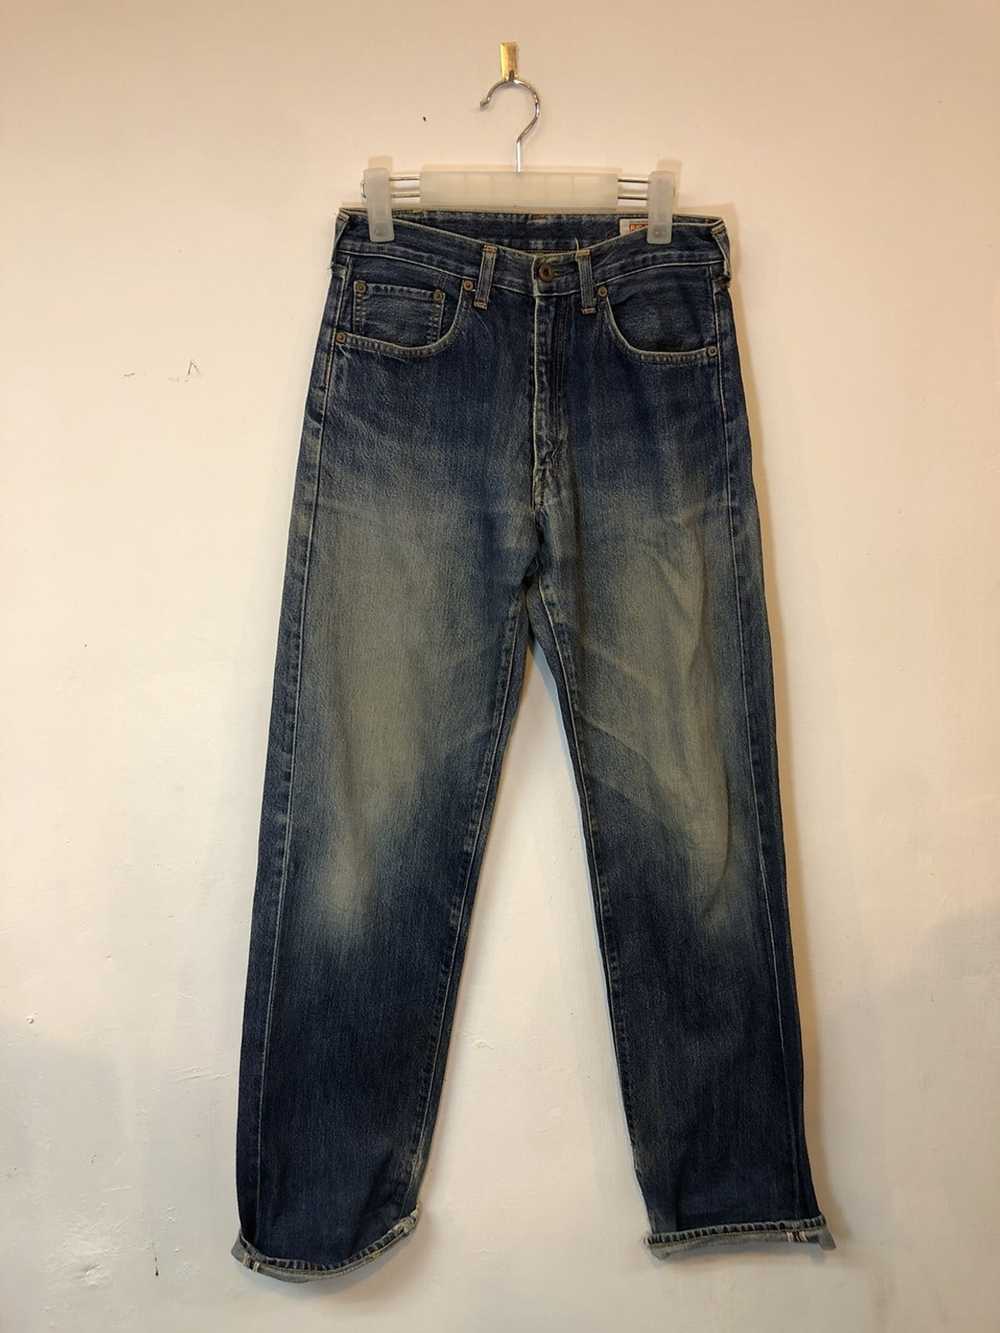 Vintage Selvedge Jeans Big John - image 2